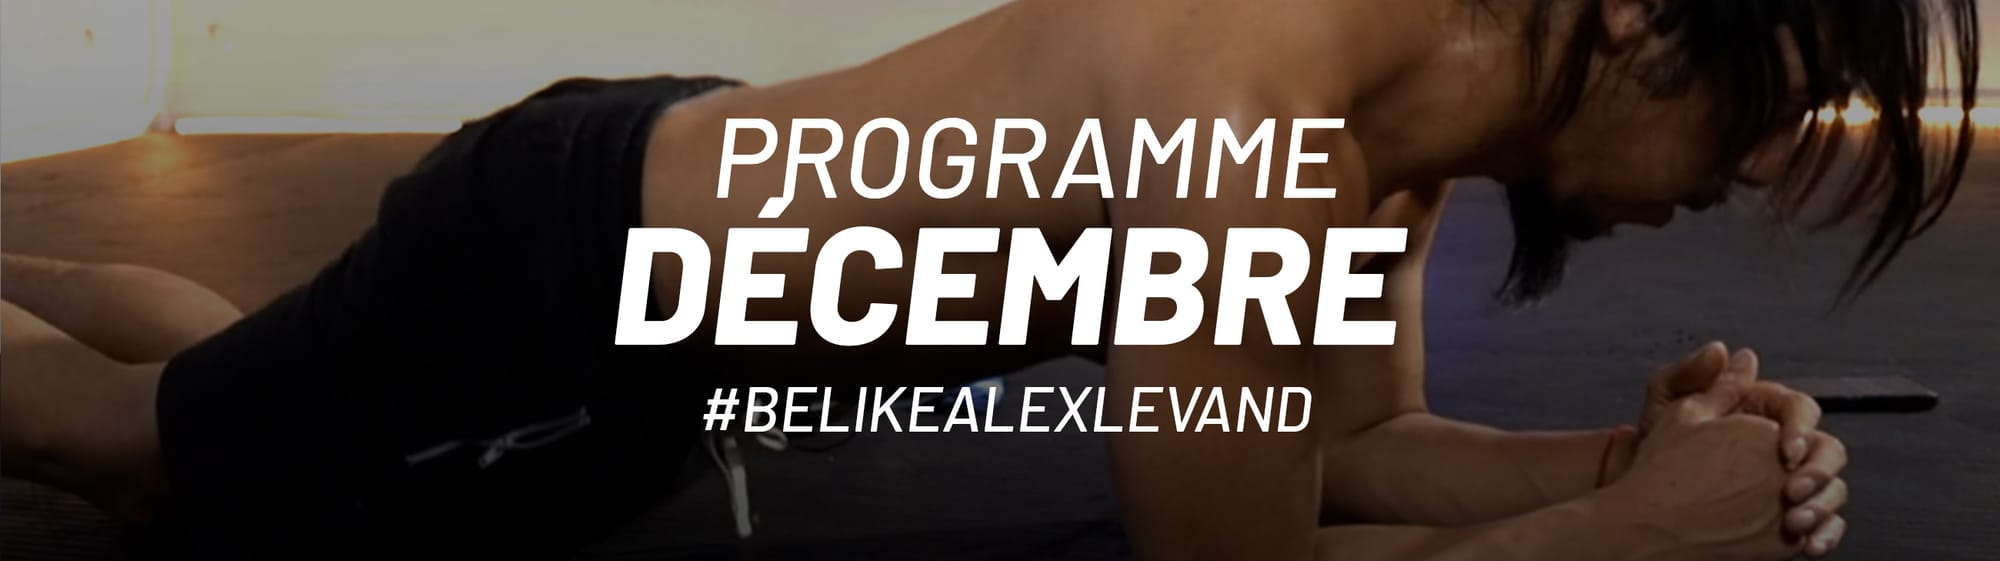 Ton programme de décembre #belikealexlevand